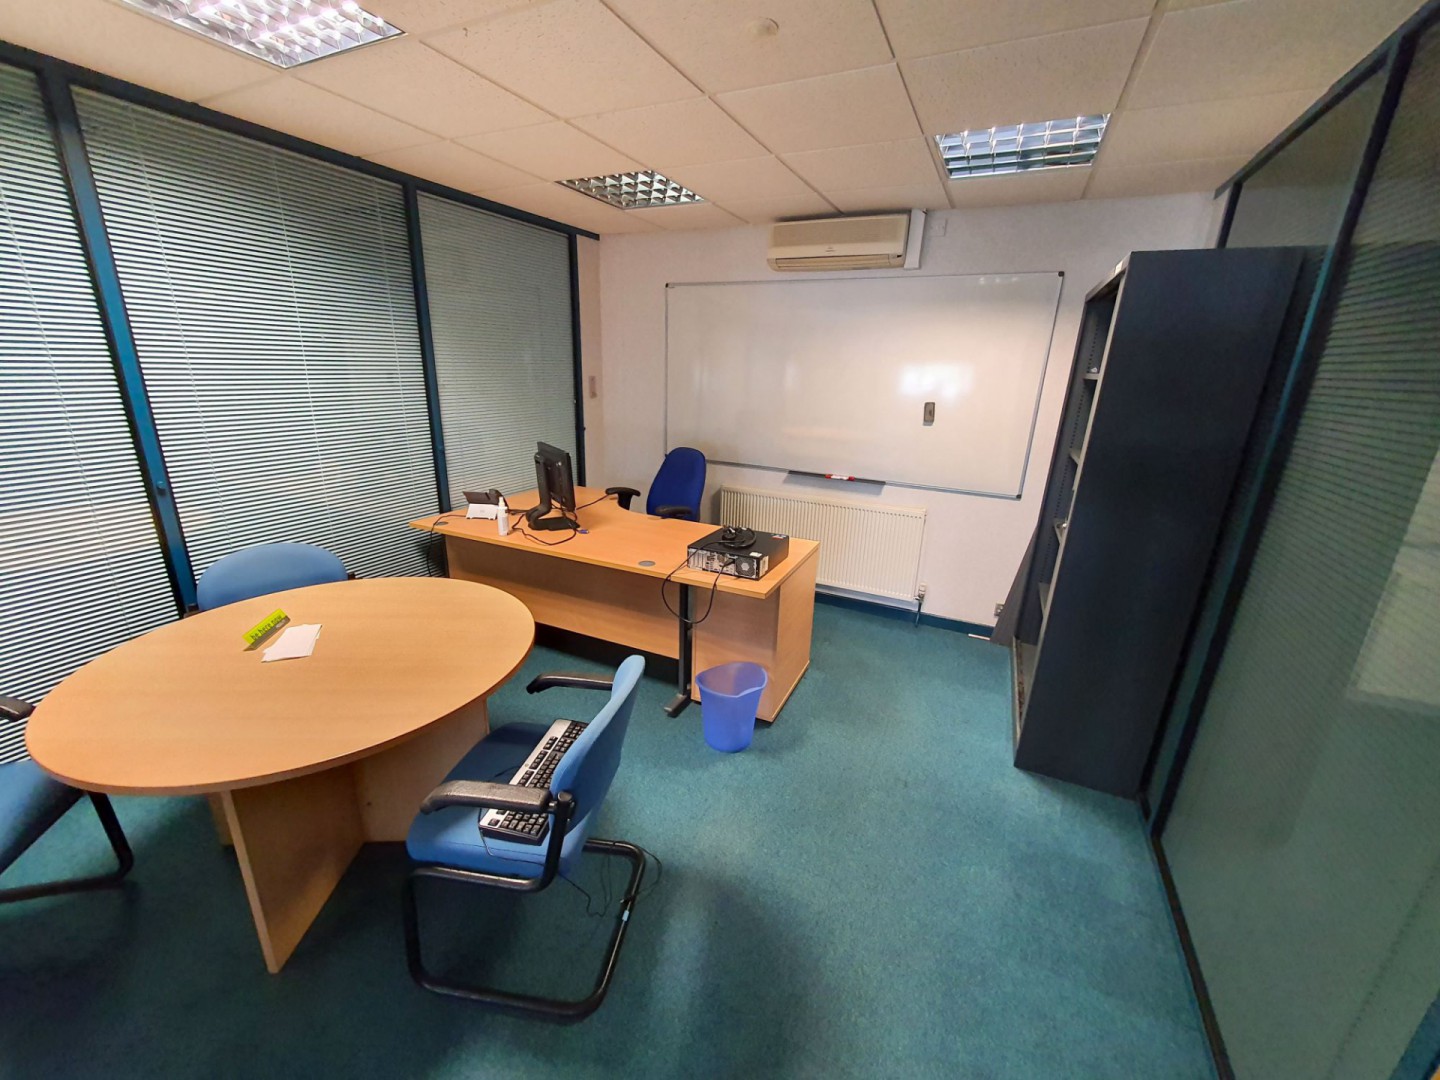 Contents of office inc: 1600x1200mm L-shape desk,...